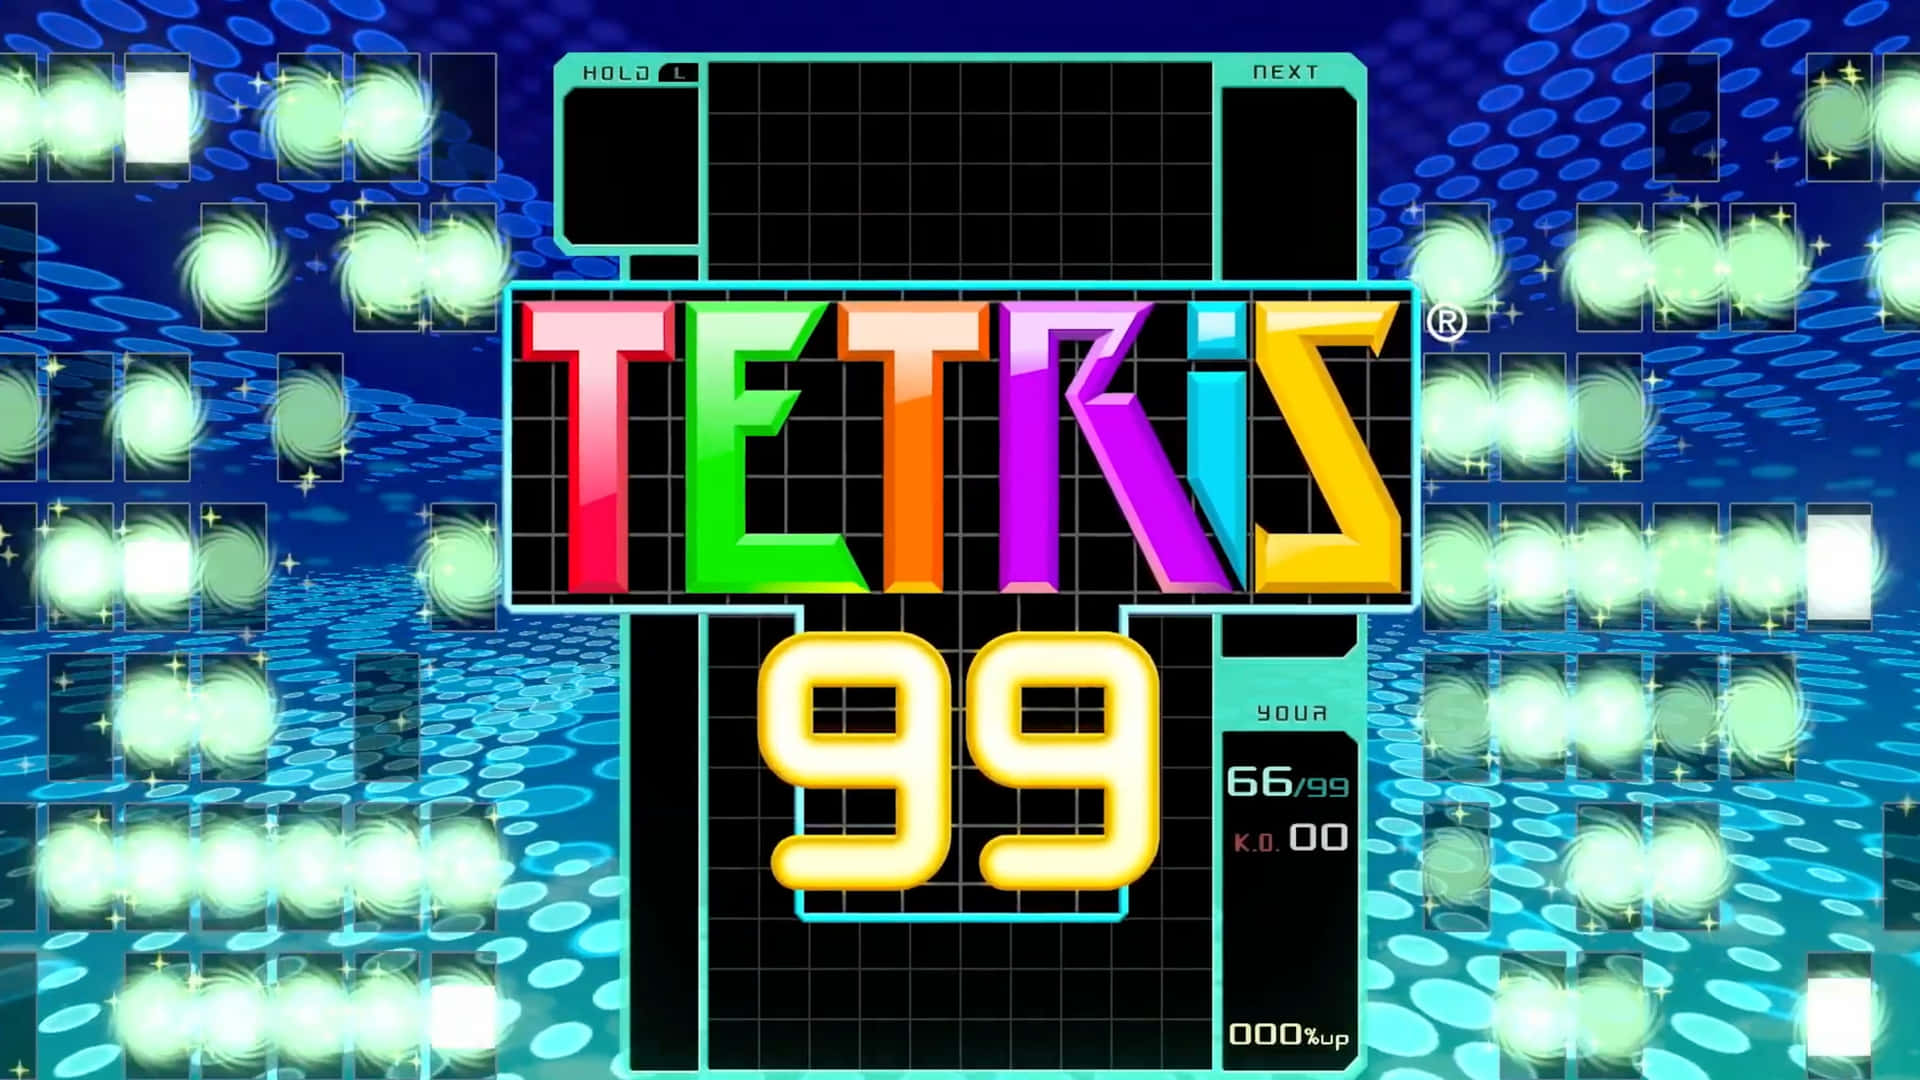 Tetrisbaggrund På 3840 X 2160 Skærmopløsning.